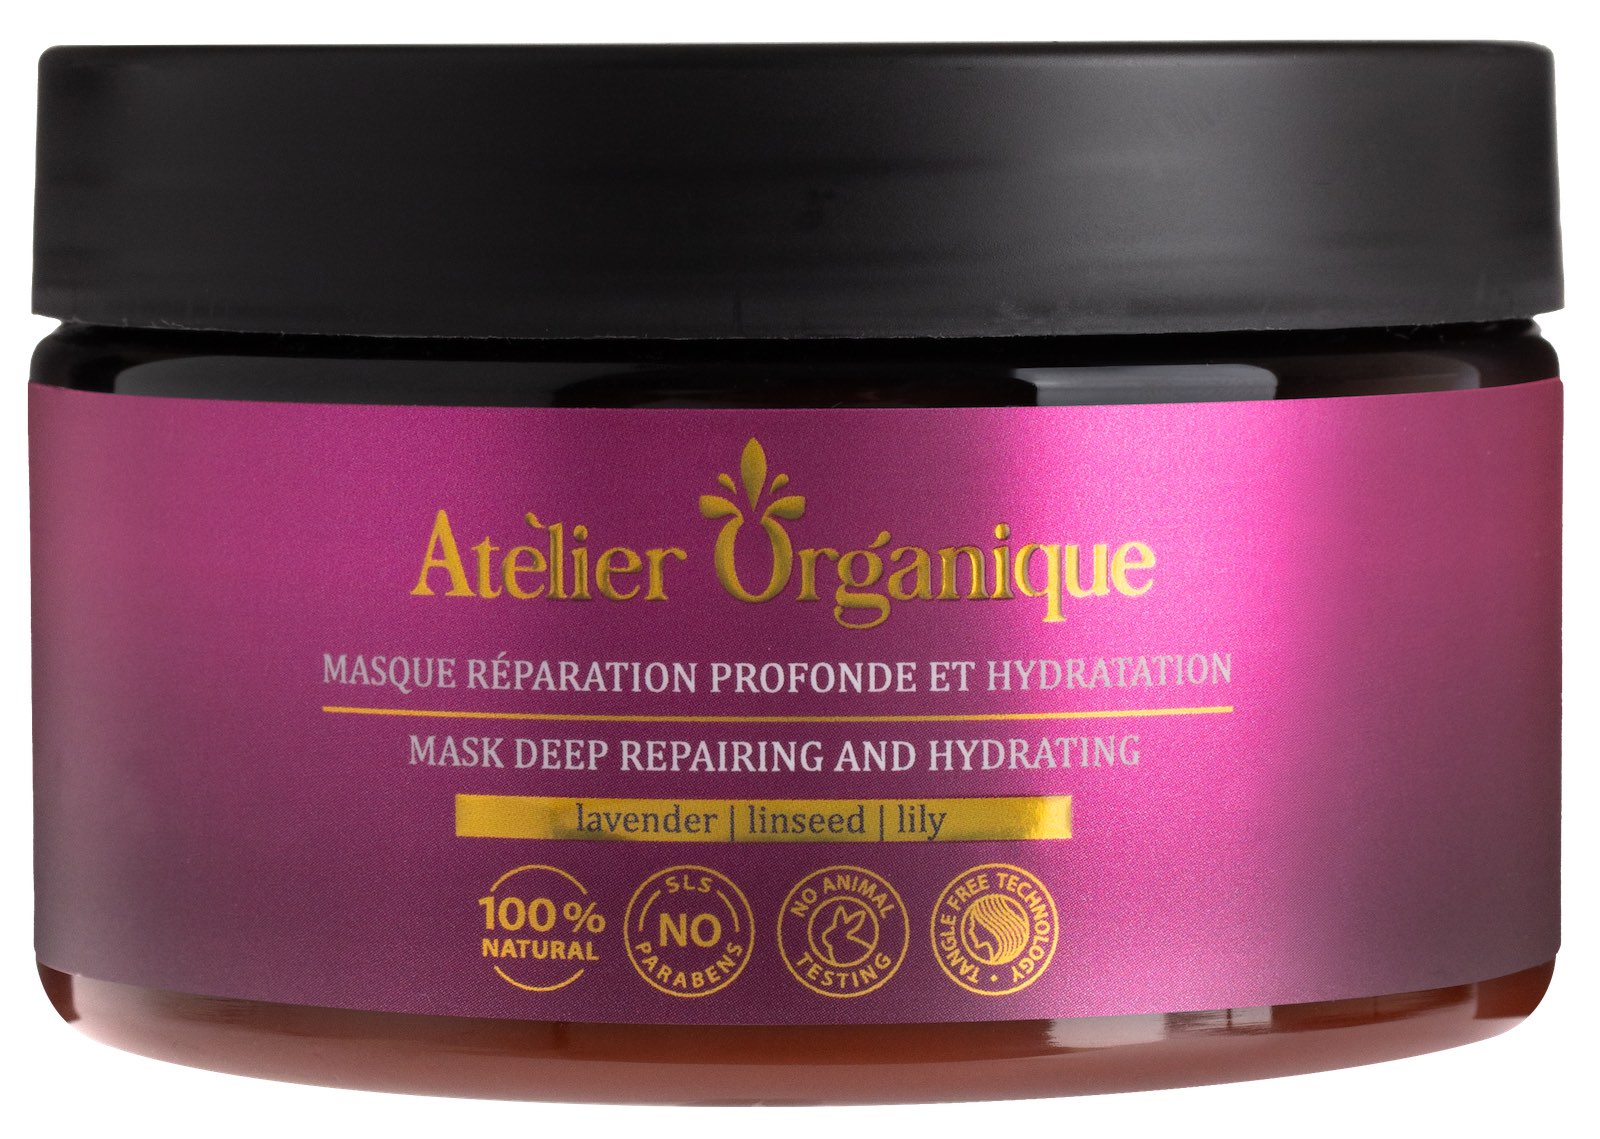 Маска для волос глубокое восстановление. Atelier organique маска. Ательер для волос. Ателье Органик шампунь. Маска для волос ателье Органик.